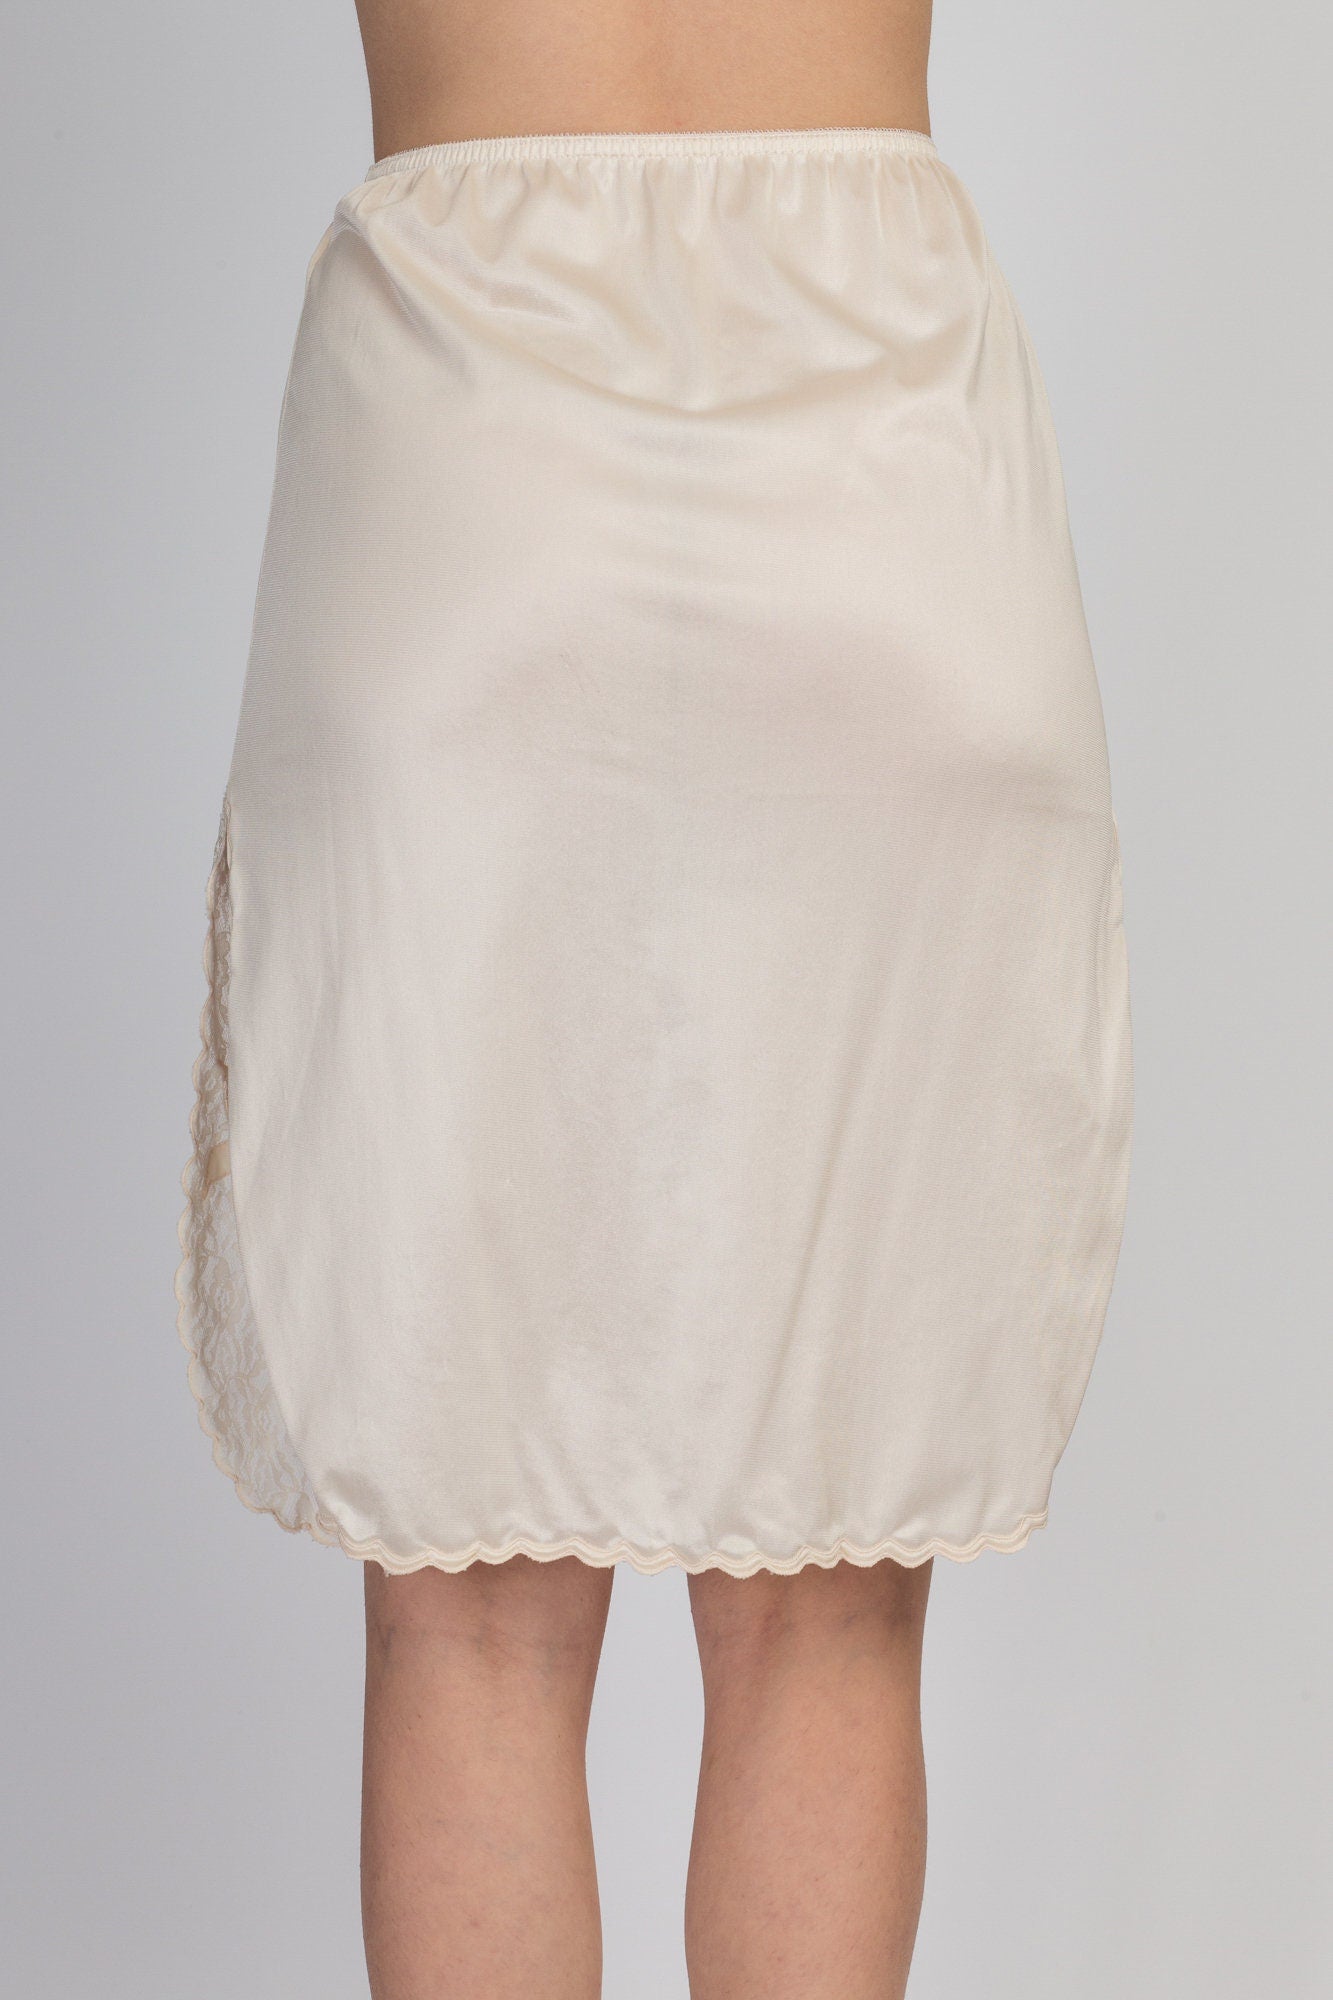 80s Ivory Mini Skirt Slip - Small 